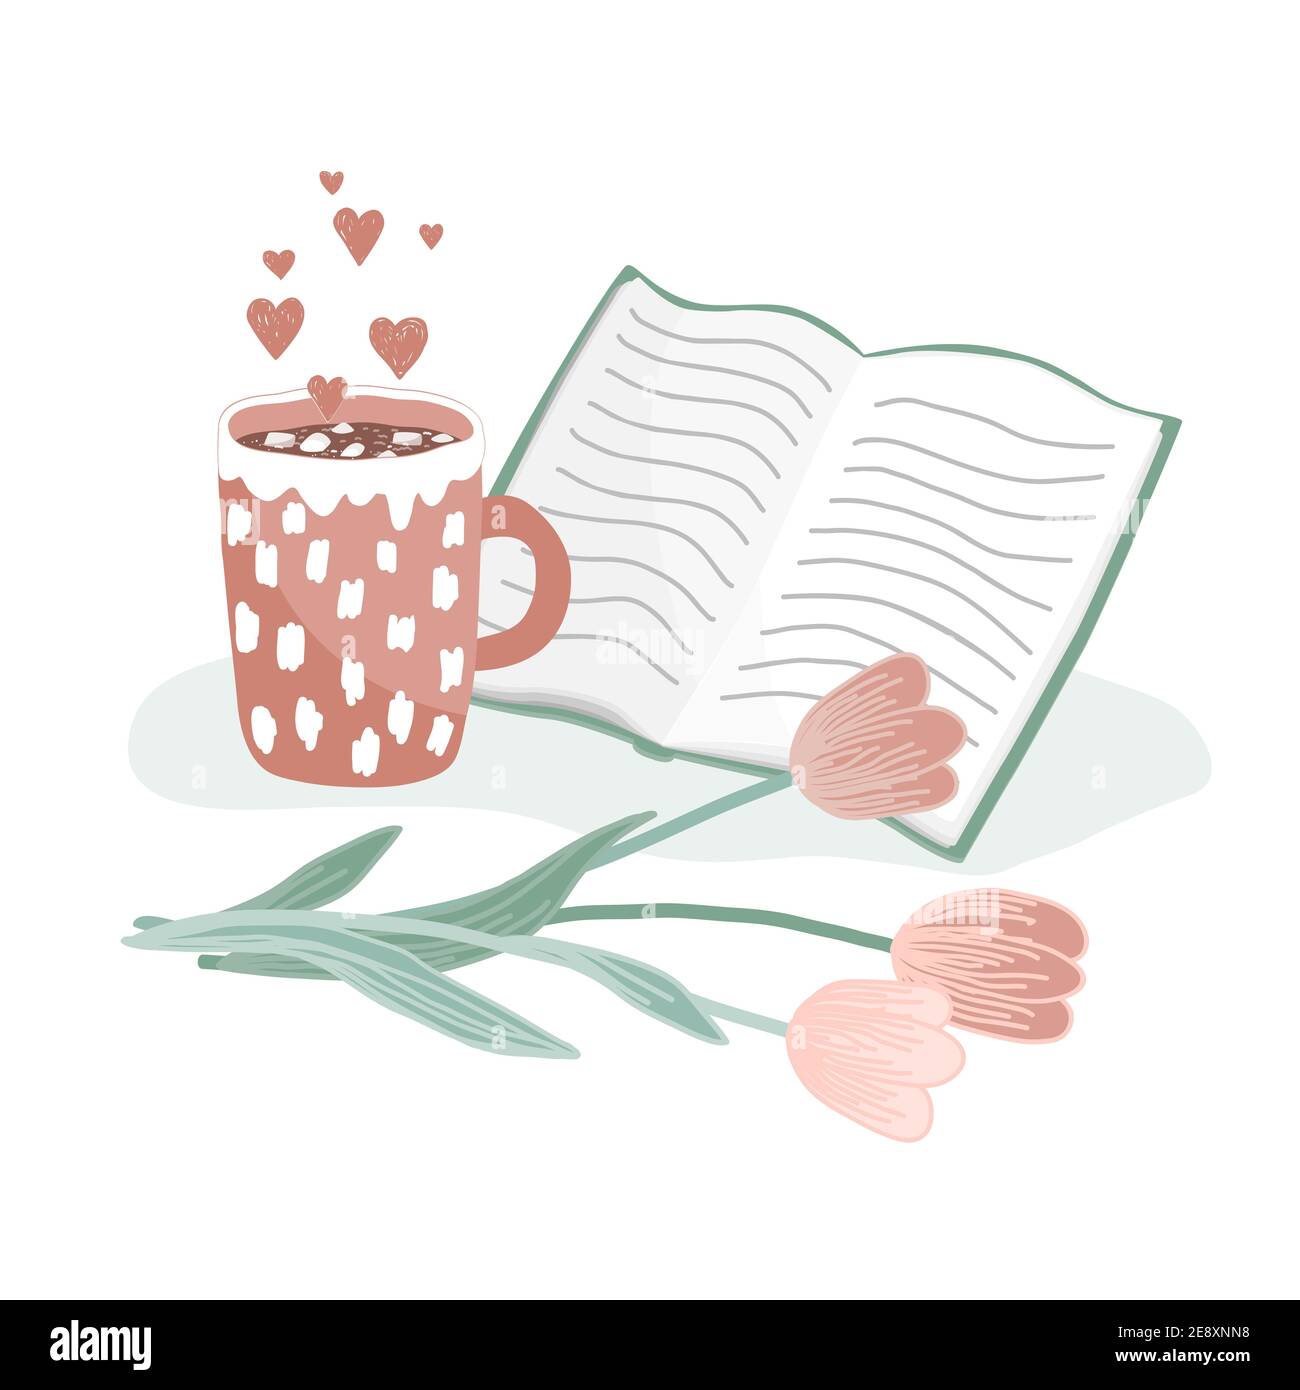 Una tazza di cacao caldo con marshmallow, libro aperto e tulipani. Concetto di amore, igge, e mattina felice. Illustrazione vettoriale del disegno manuale Illustrazione Vettoriale